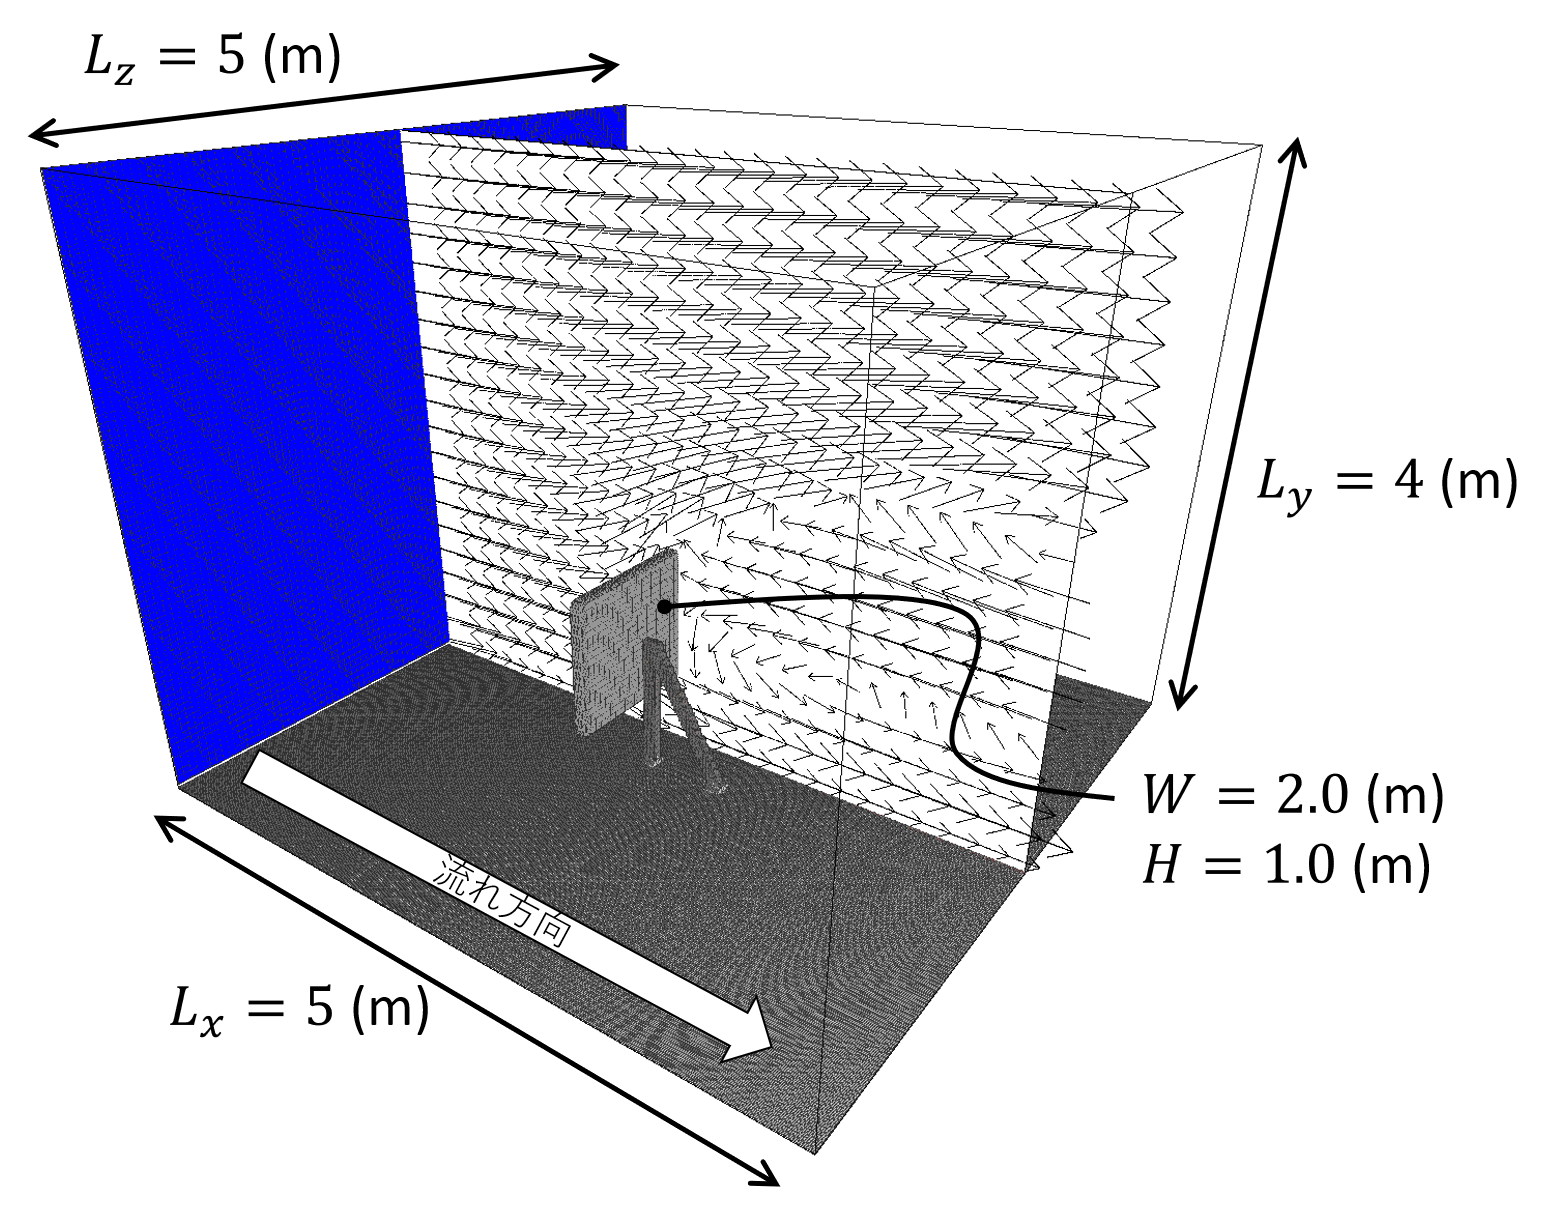 看板周りの流れシミュレーションの概略図。